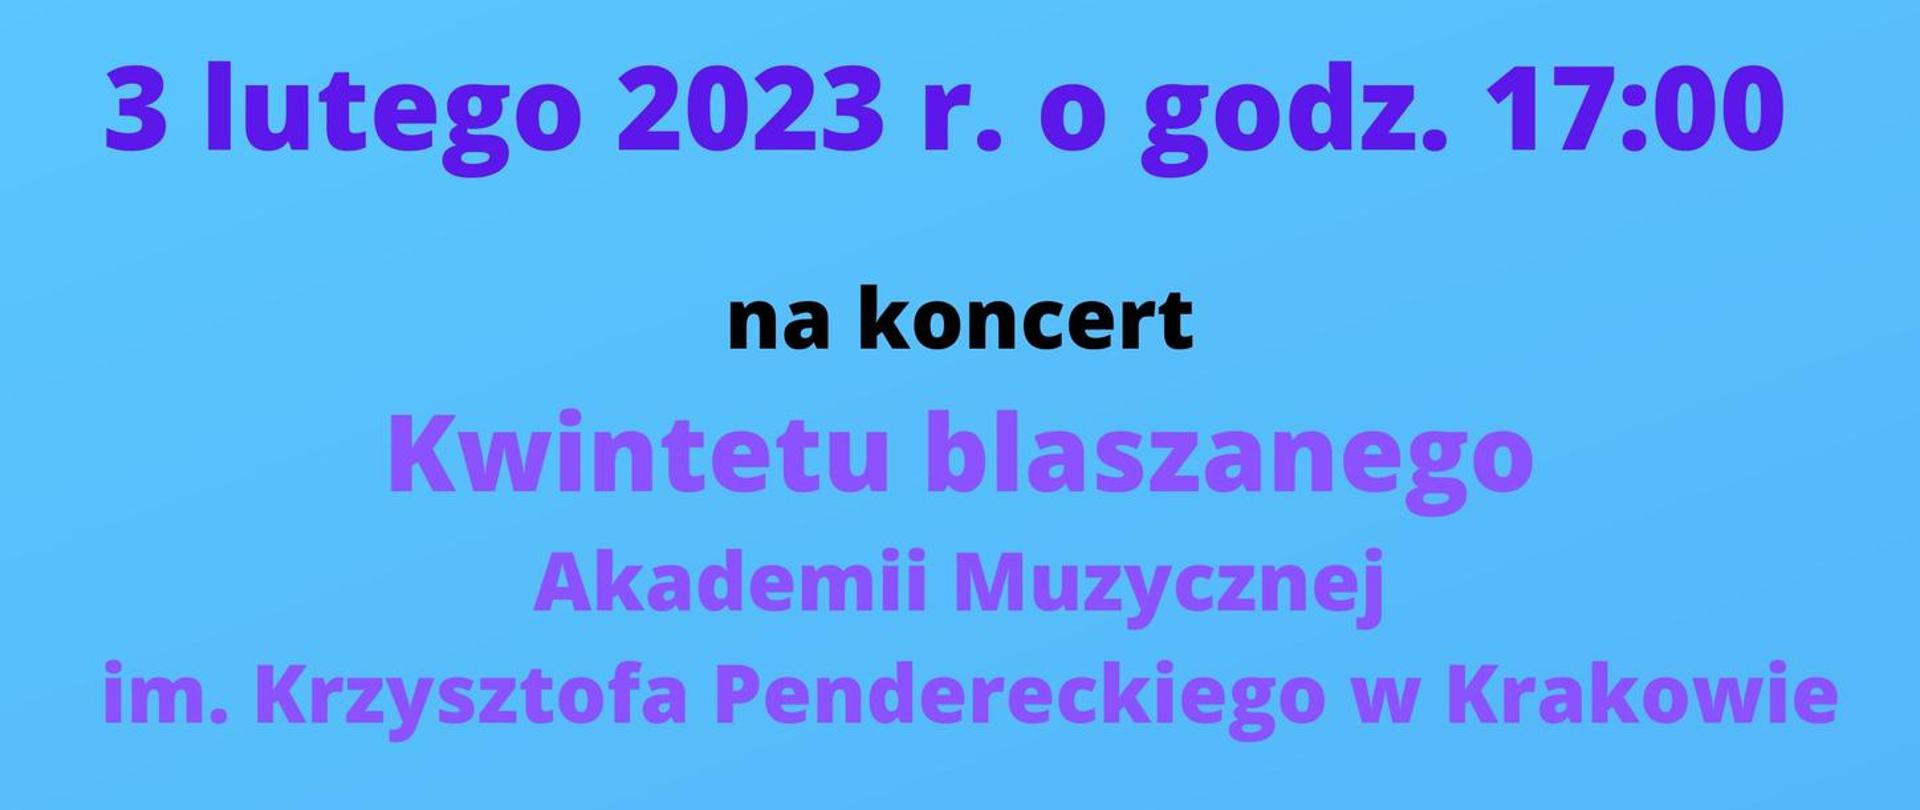 Plakat informujący o koncercie Kwintetu Dętego Akademii Muzycznej w Krakowie, na niebieskim tle informacje i program, na dole grafika przedstawiająca puzon, saksofon i trąbkę